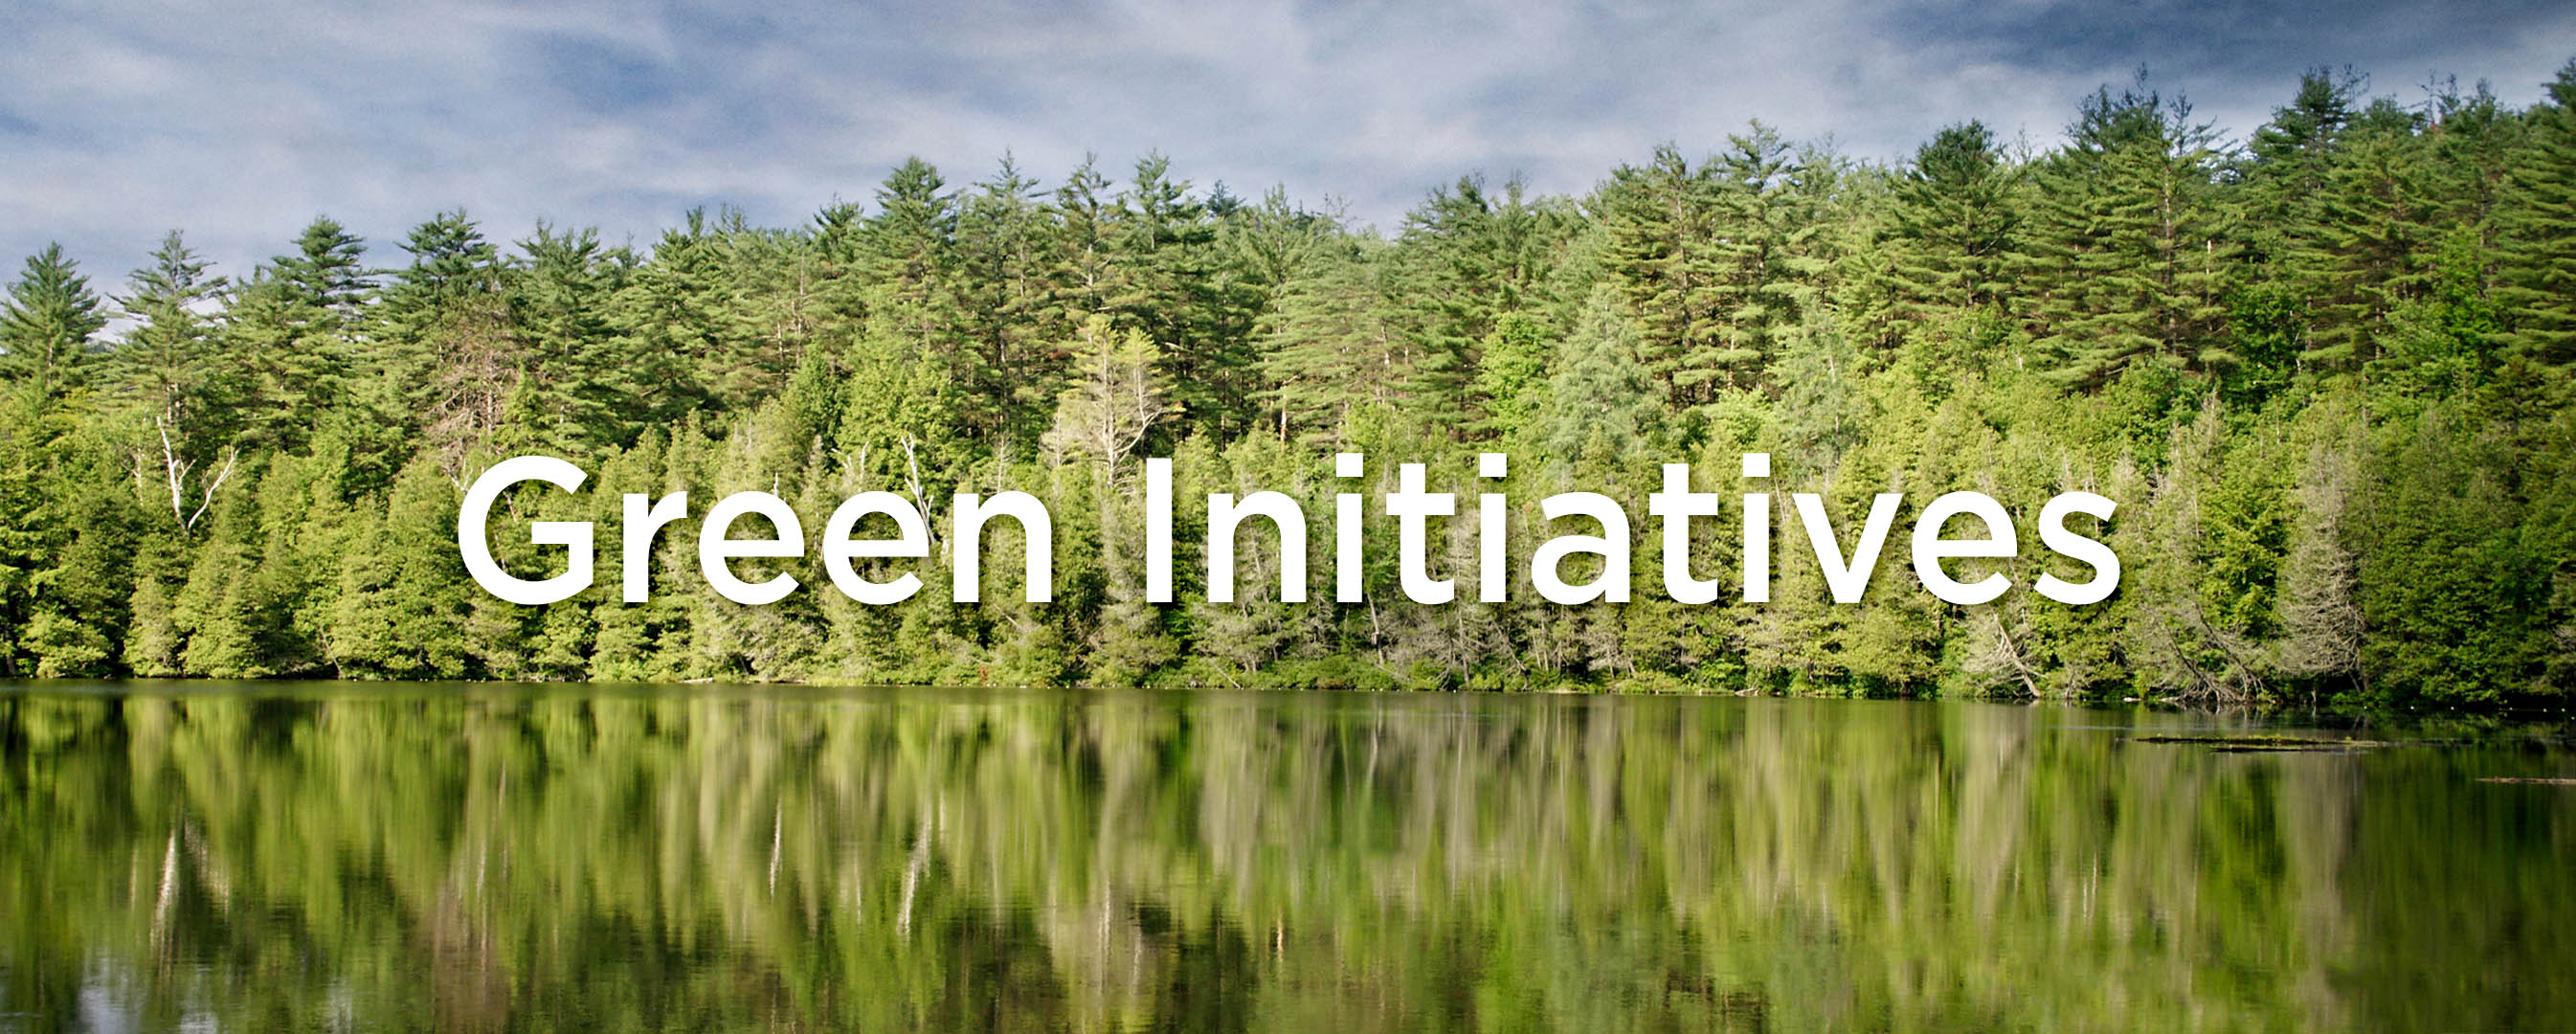 Green Initiatives Header